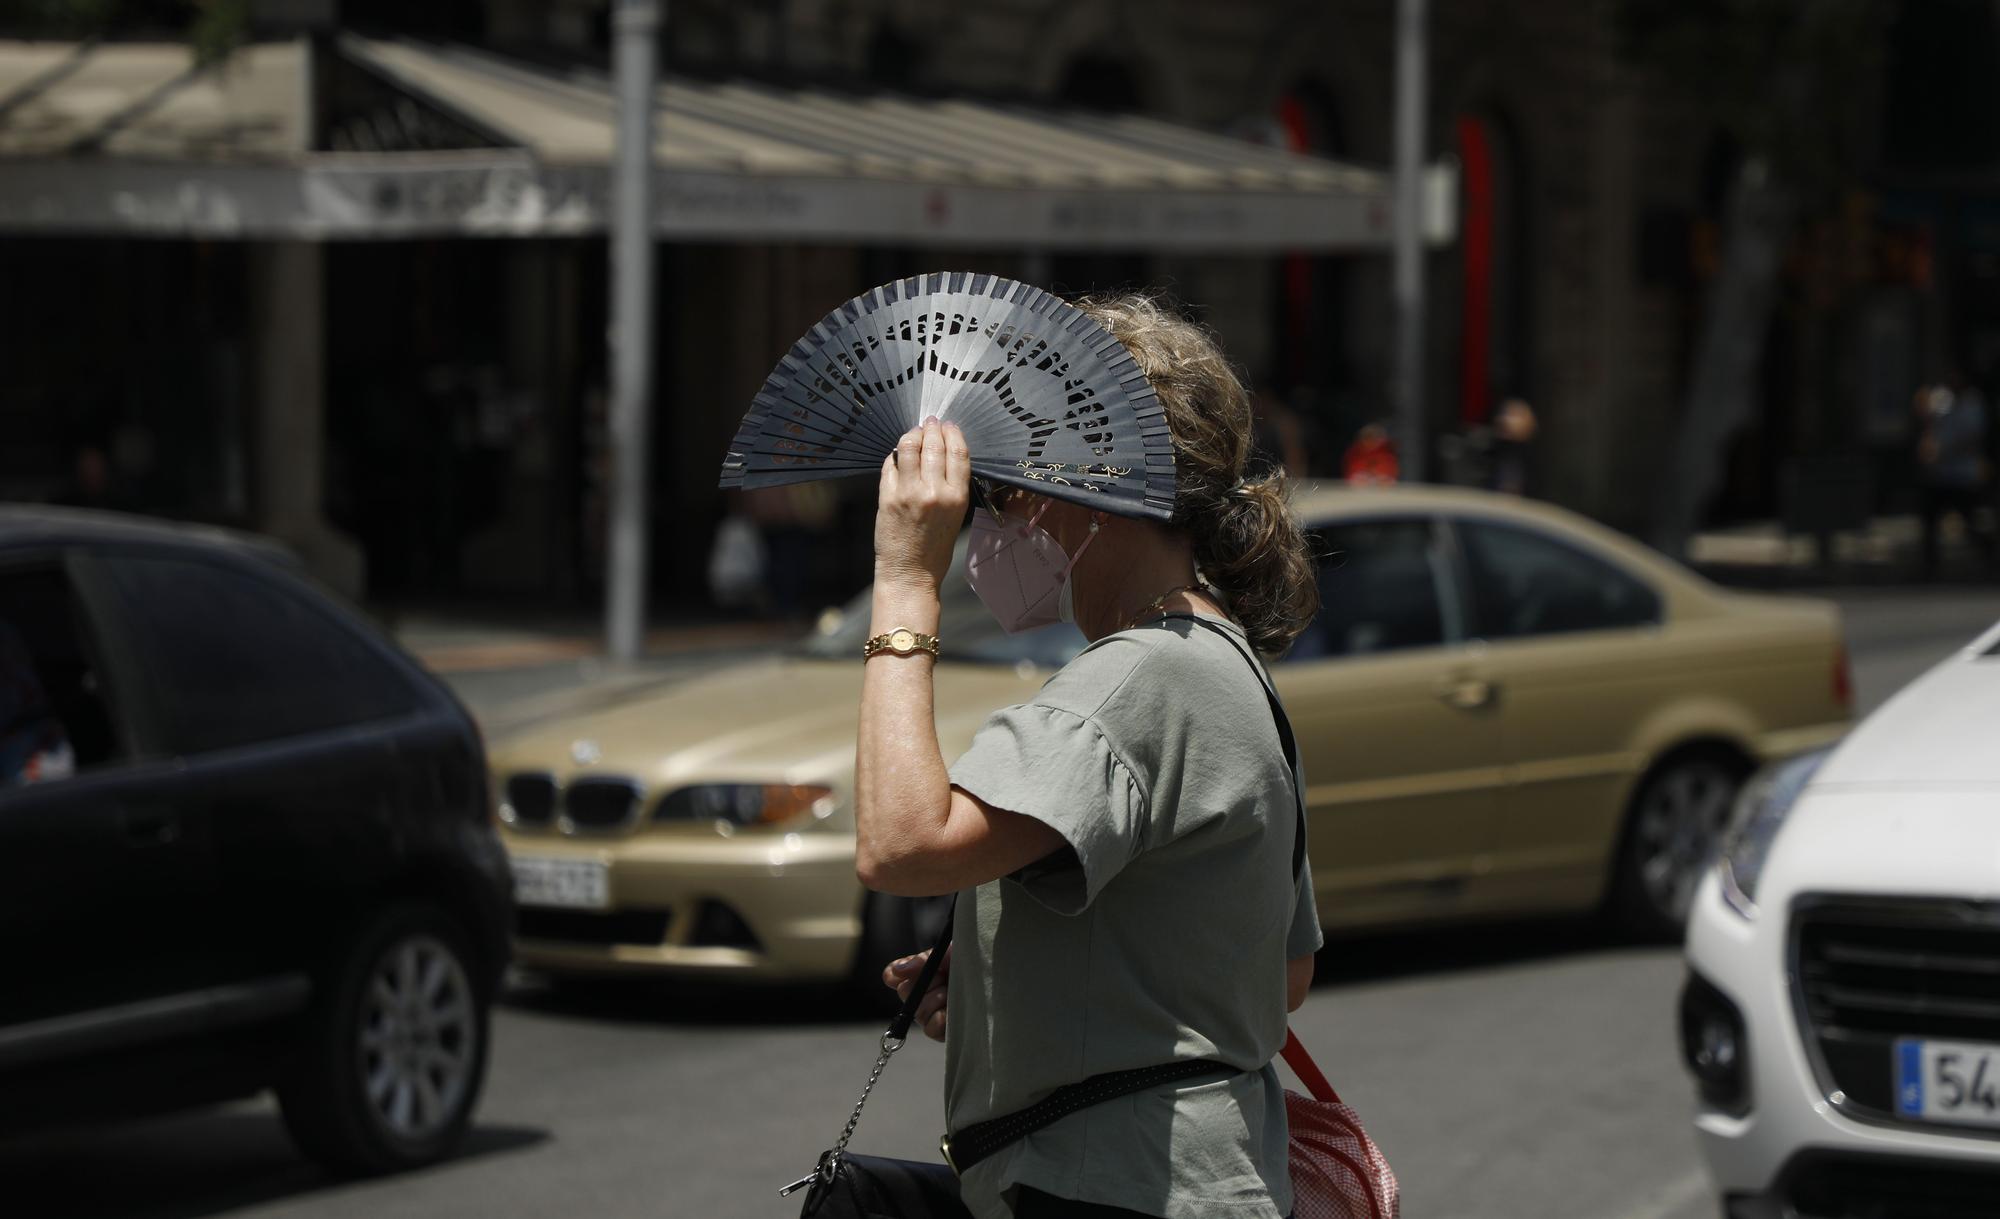 Hitzewelle auf Mallorca - So suchen die Menschen Abkühlung